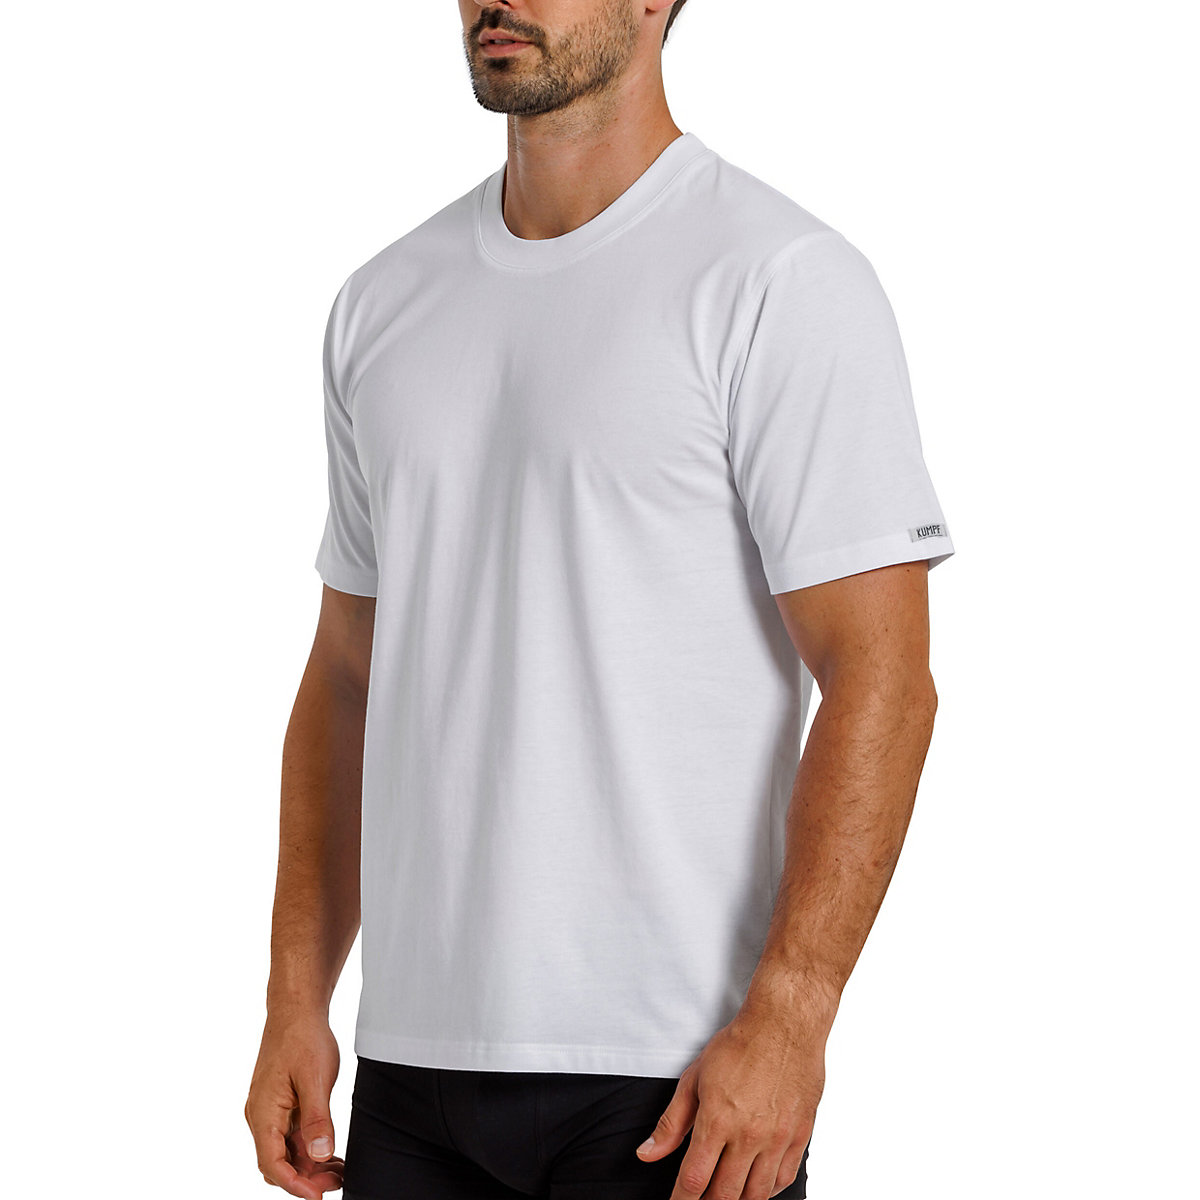 Kumpf Body Fashion 2er Sparpack Herren T-Shirt Bio Cotton Unterhemden blau/weiß